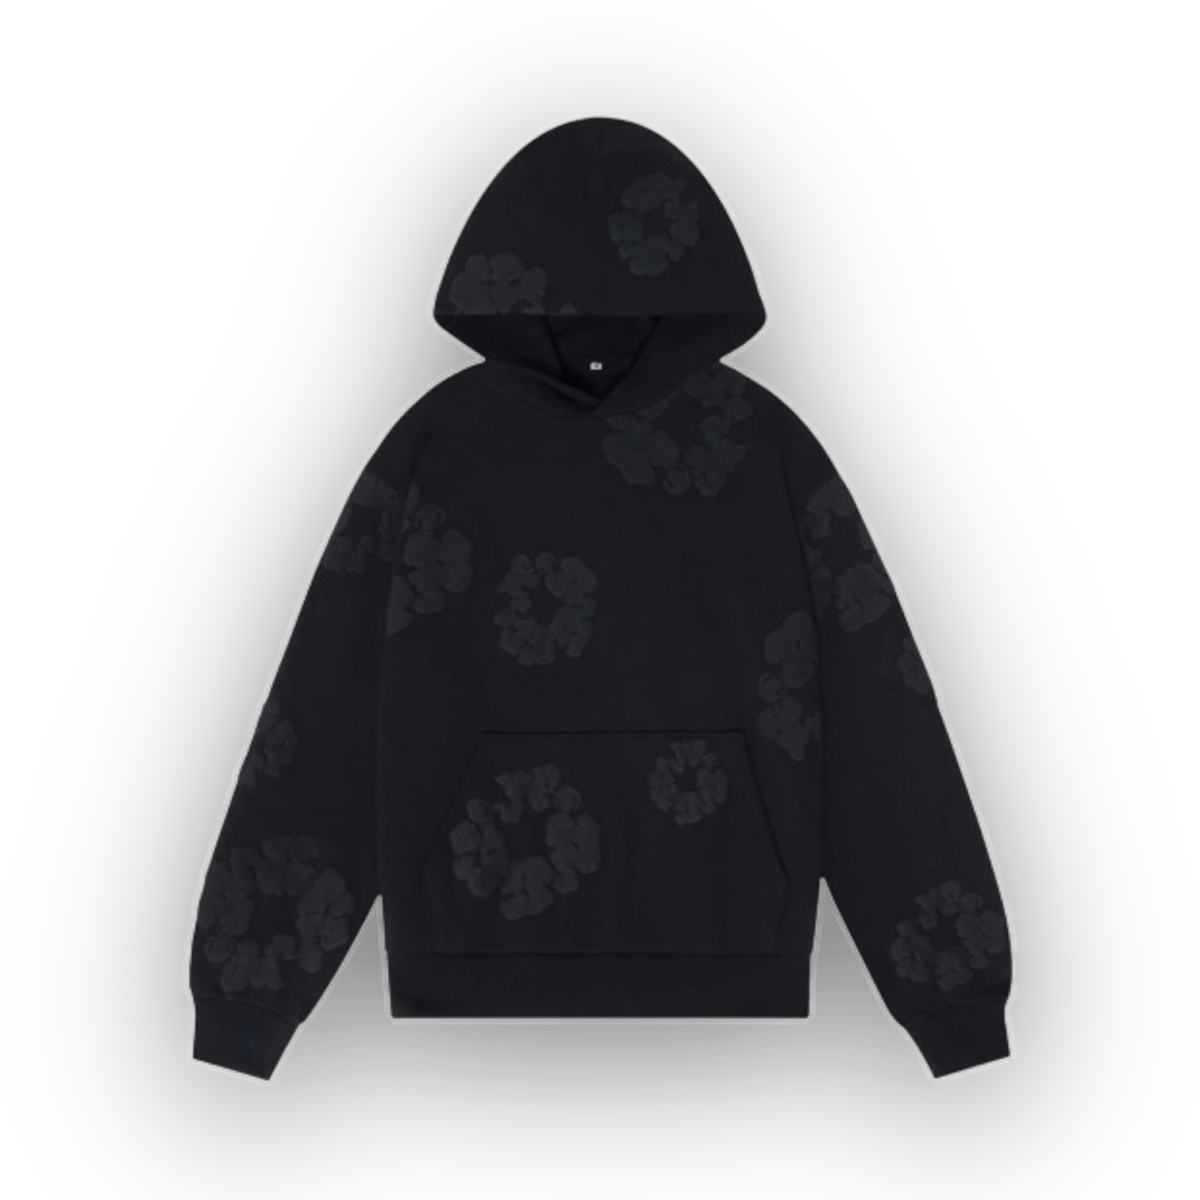 Denim Tears Mono Cotton Wreath Sweatshirt Black - Clothing - Jawns on Fire Sneakers & Streetwear